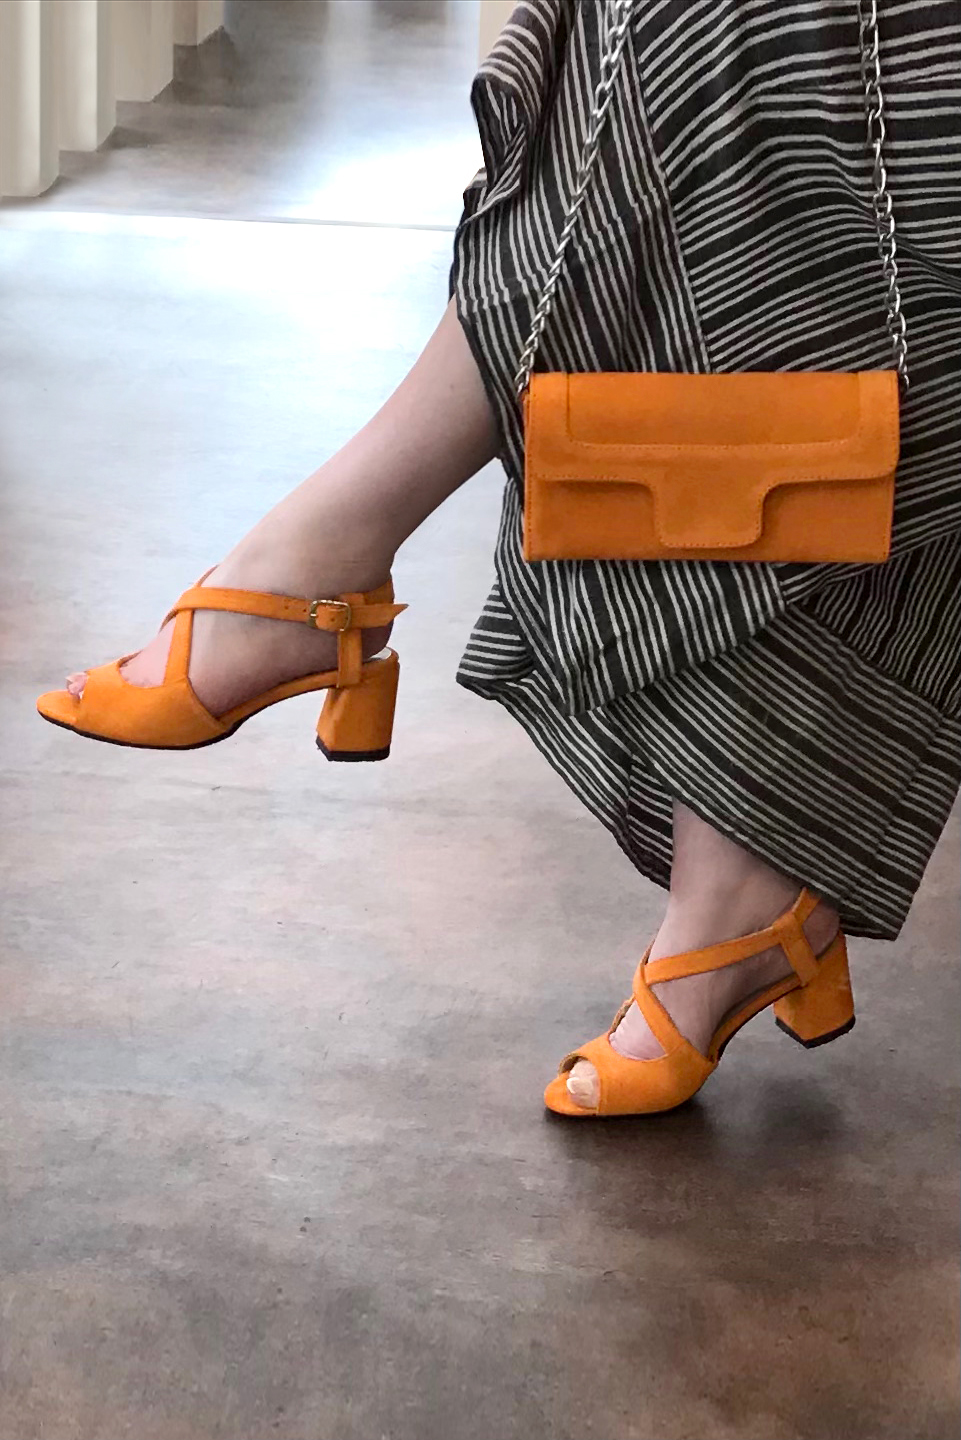 Sandales et pochette assorties couleur orange abricot - Florence KOOIJMAN